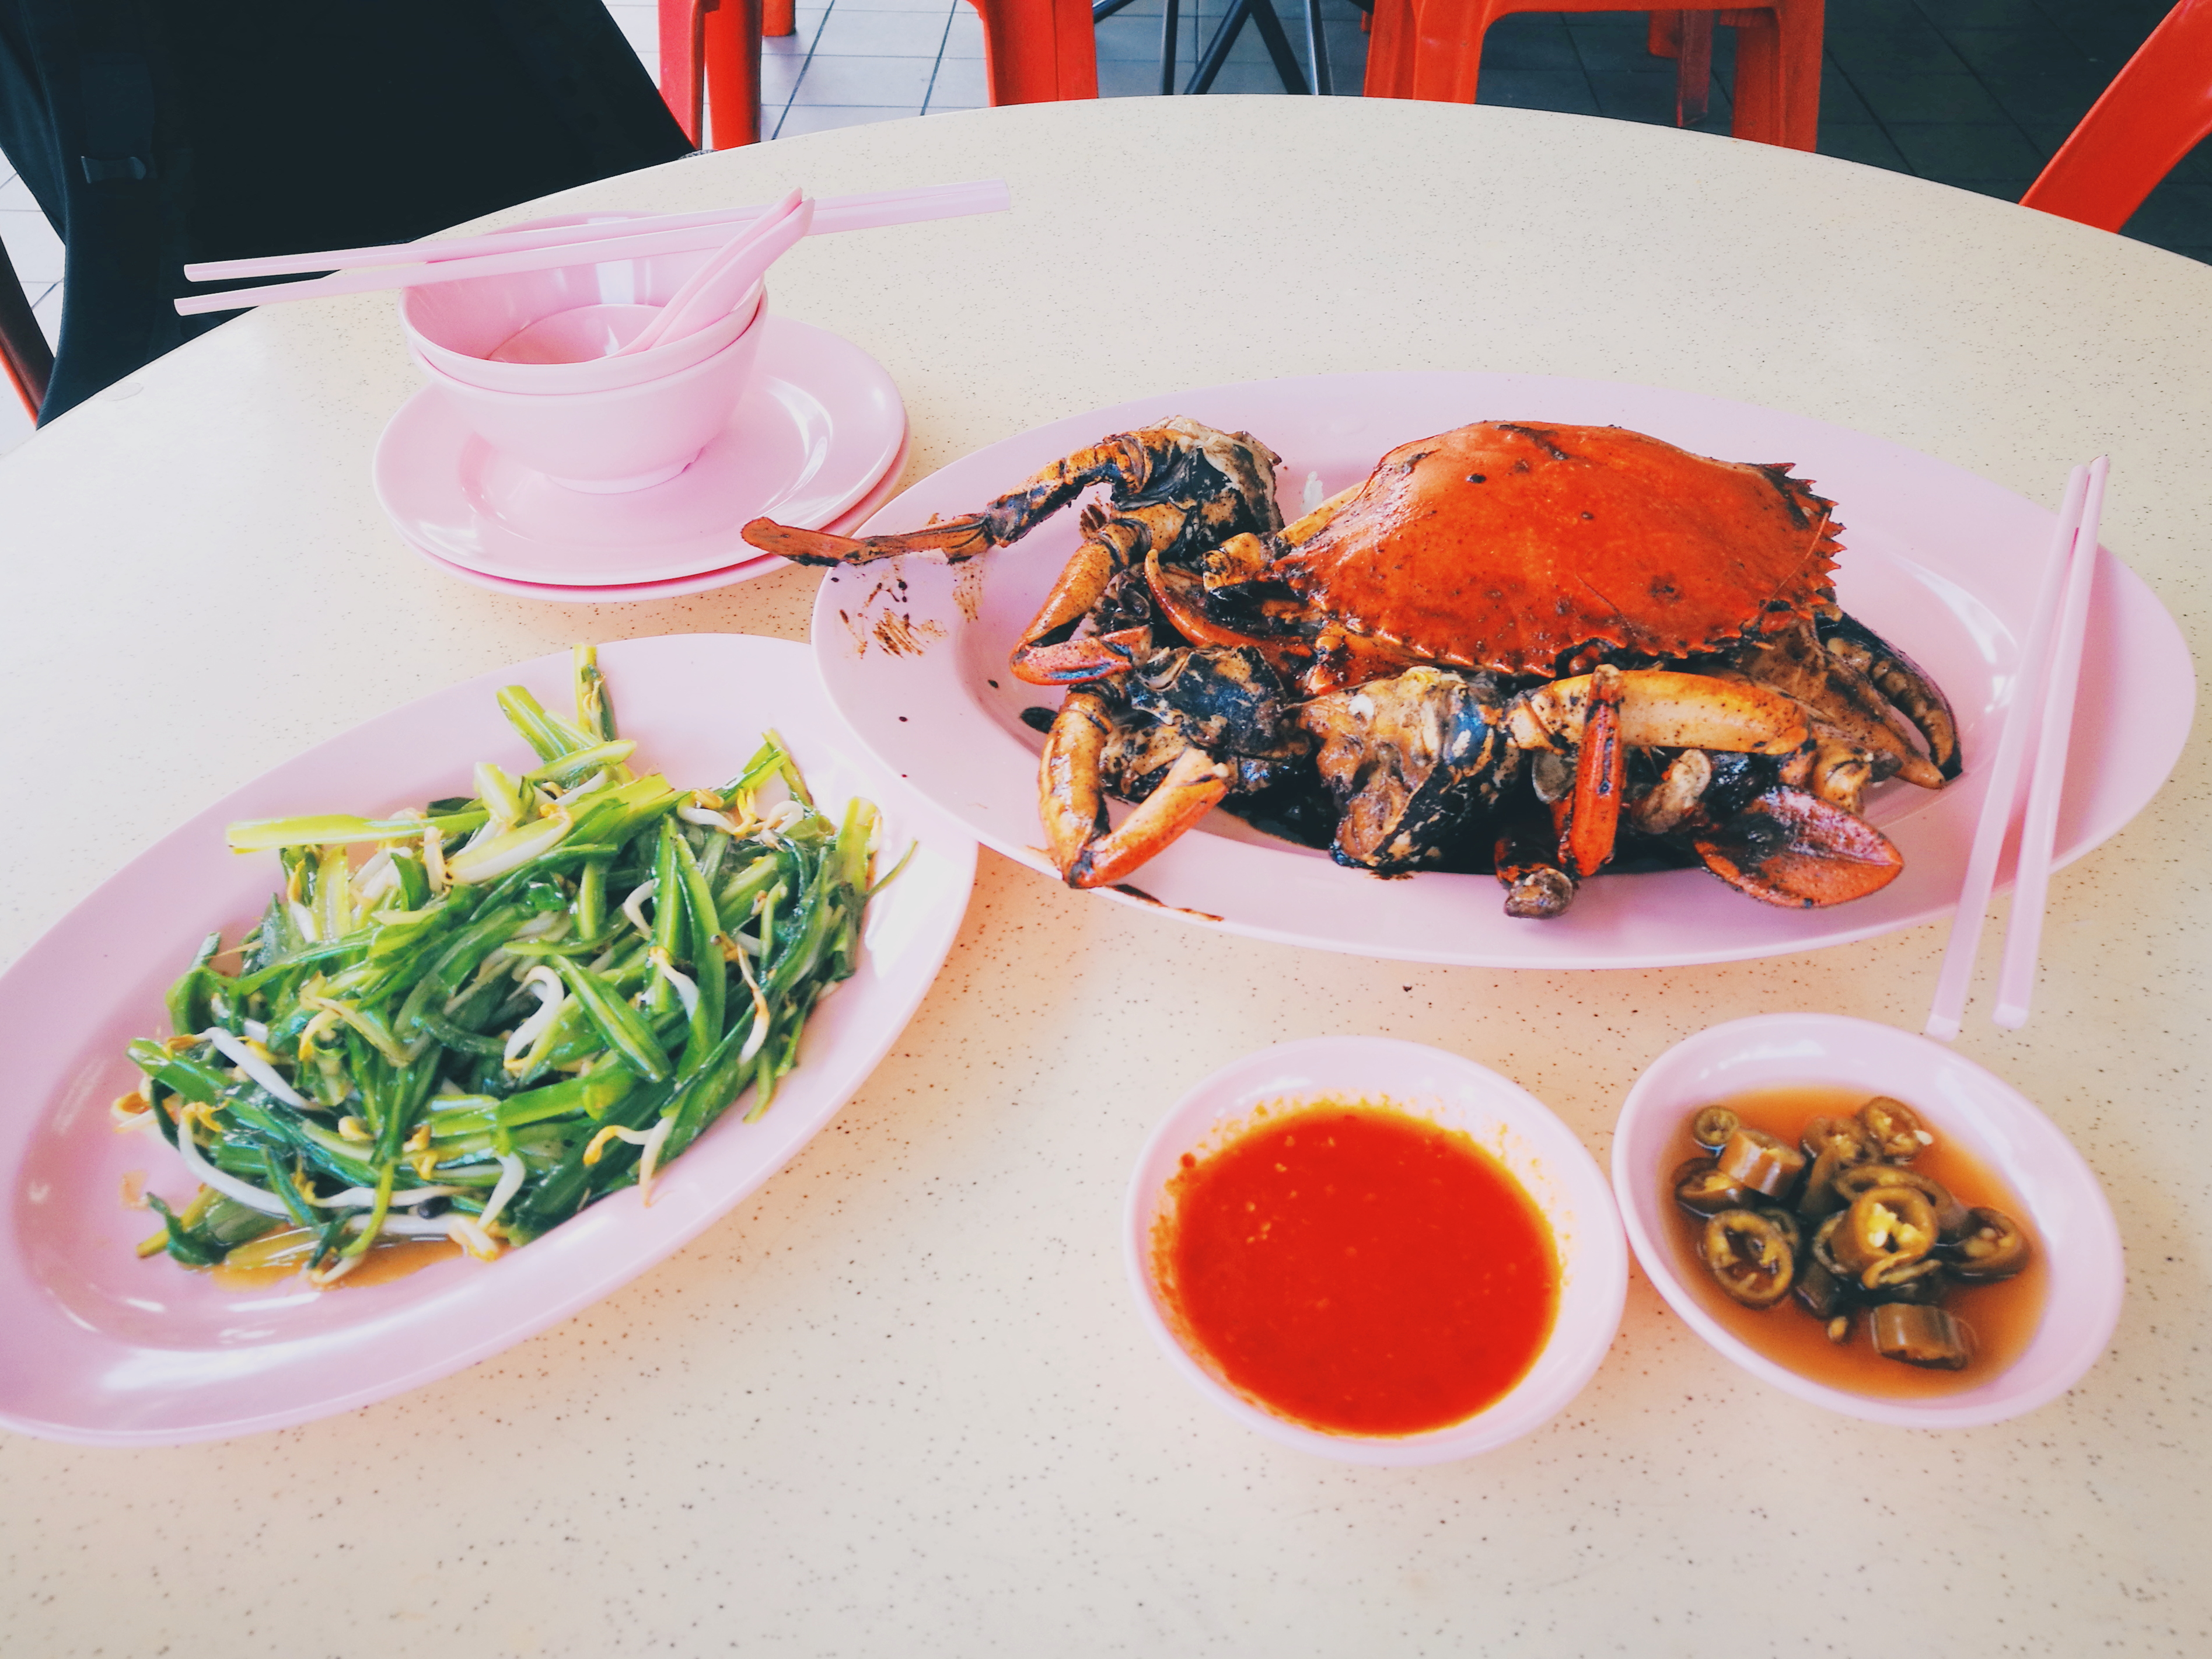 新加坡螃蟹對決: 長堤黑椒蟹 VS Mellben Seafood蟹湯米線